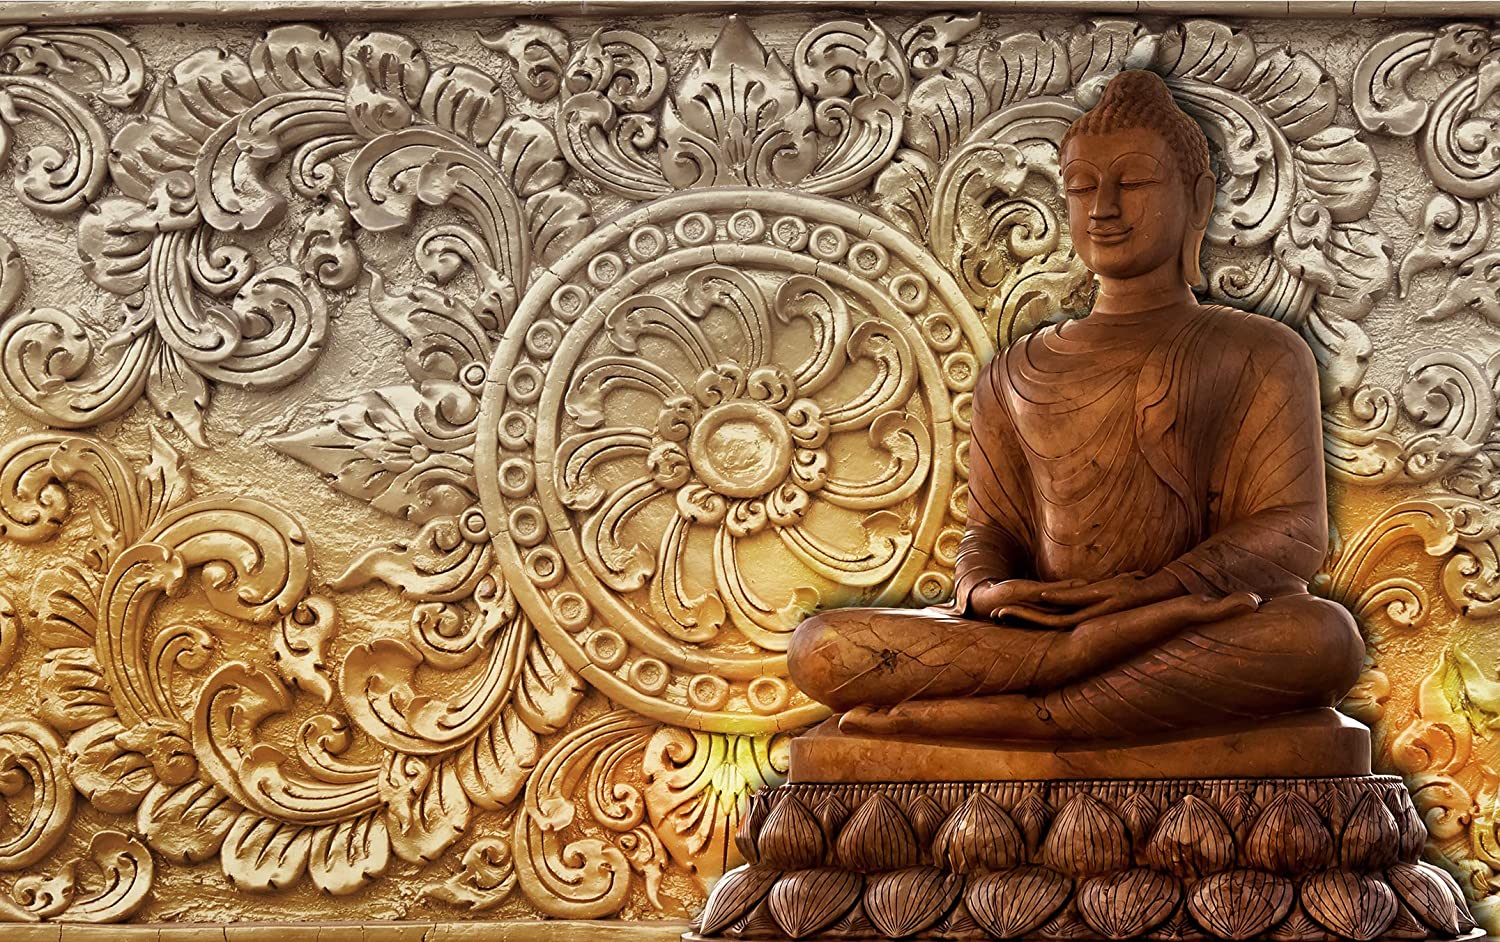 Bộ ảnh phật 3D đẹp nhất: Bạn muốn tìm hiểu về những hình ảnh Phật 3D đẹp nhất và sống động nhất để thể hiện lòng thành kính của mình? Đến với chúng tôi, bạn sẽ có cơ hội chiêm ngưỡng những bức ảnh phật 3D tuyệt đẹp, đầy phong cách và tinh tế. Bộ sưu tập này sẽ mang đến cho bạn trải nghiệm thật sự tuyệt vời trong việc khám phá vẻ đẹp của các vị Phật.